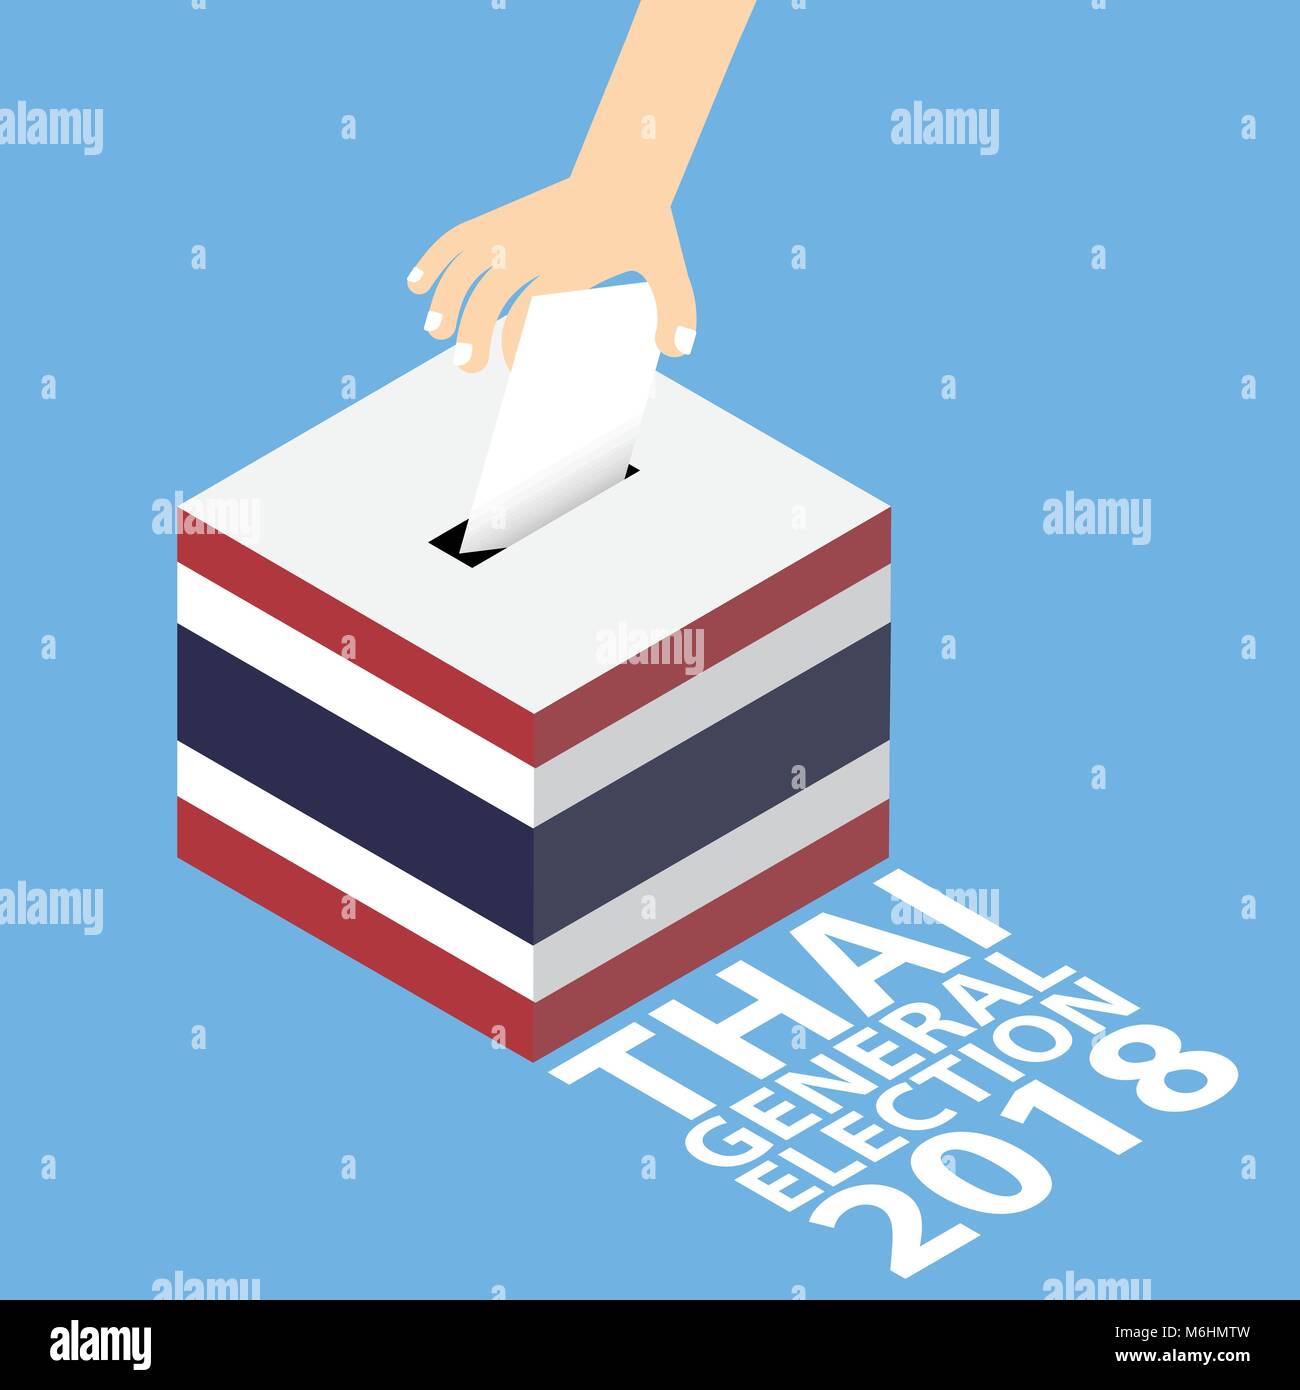 Élection générale 2018 thaï Vector Illustration Télévision Style - Mettre la main du papier de vote dans l'Urne Illustration de Vecteur